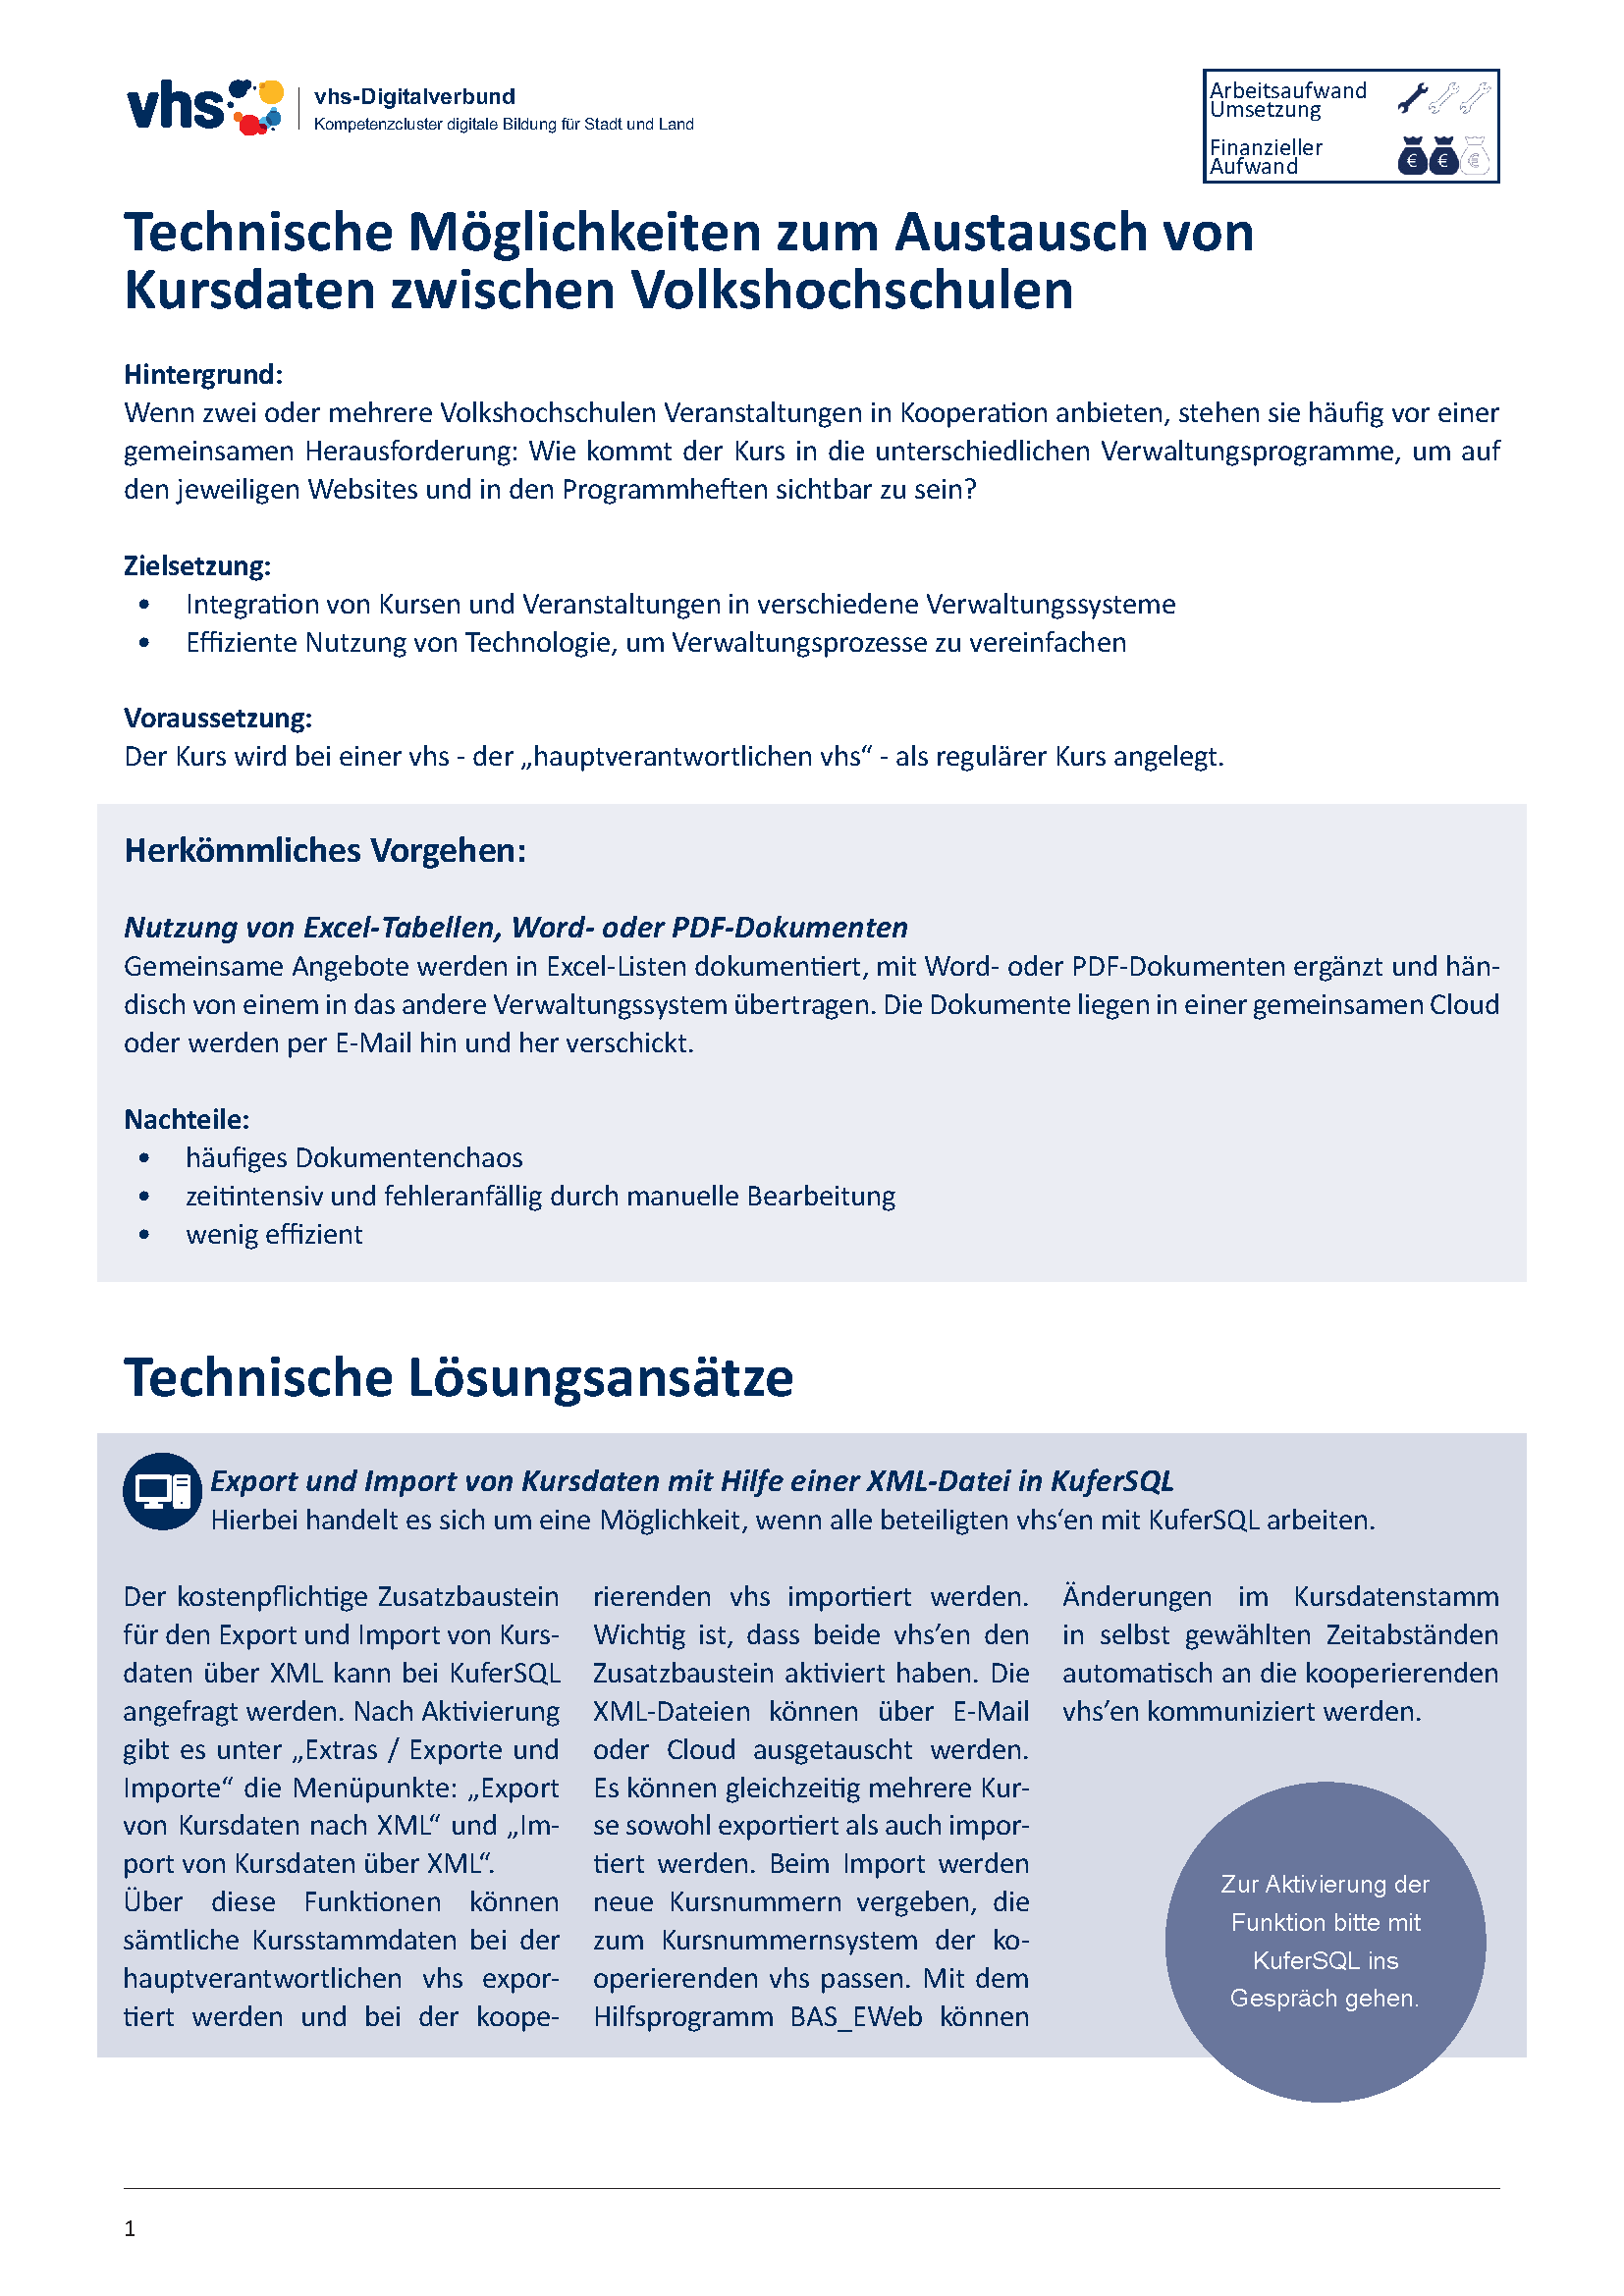 Deckblatt Kompetenzcluster: Technische Möglichkeiten Kursdatentausch